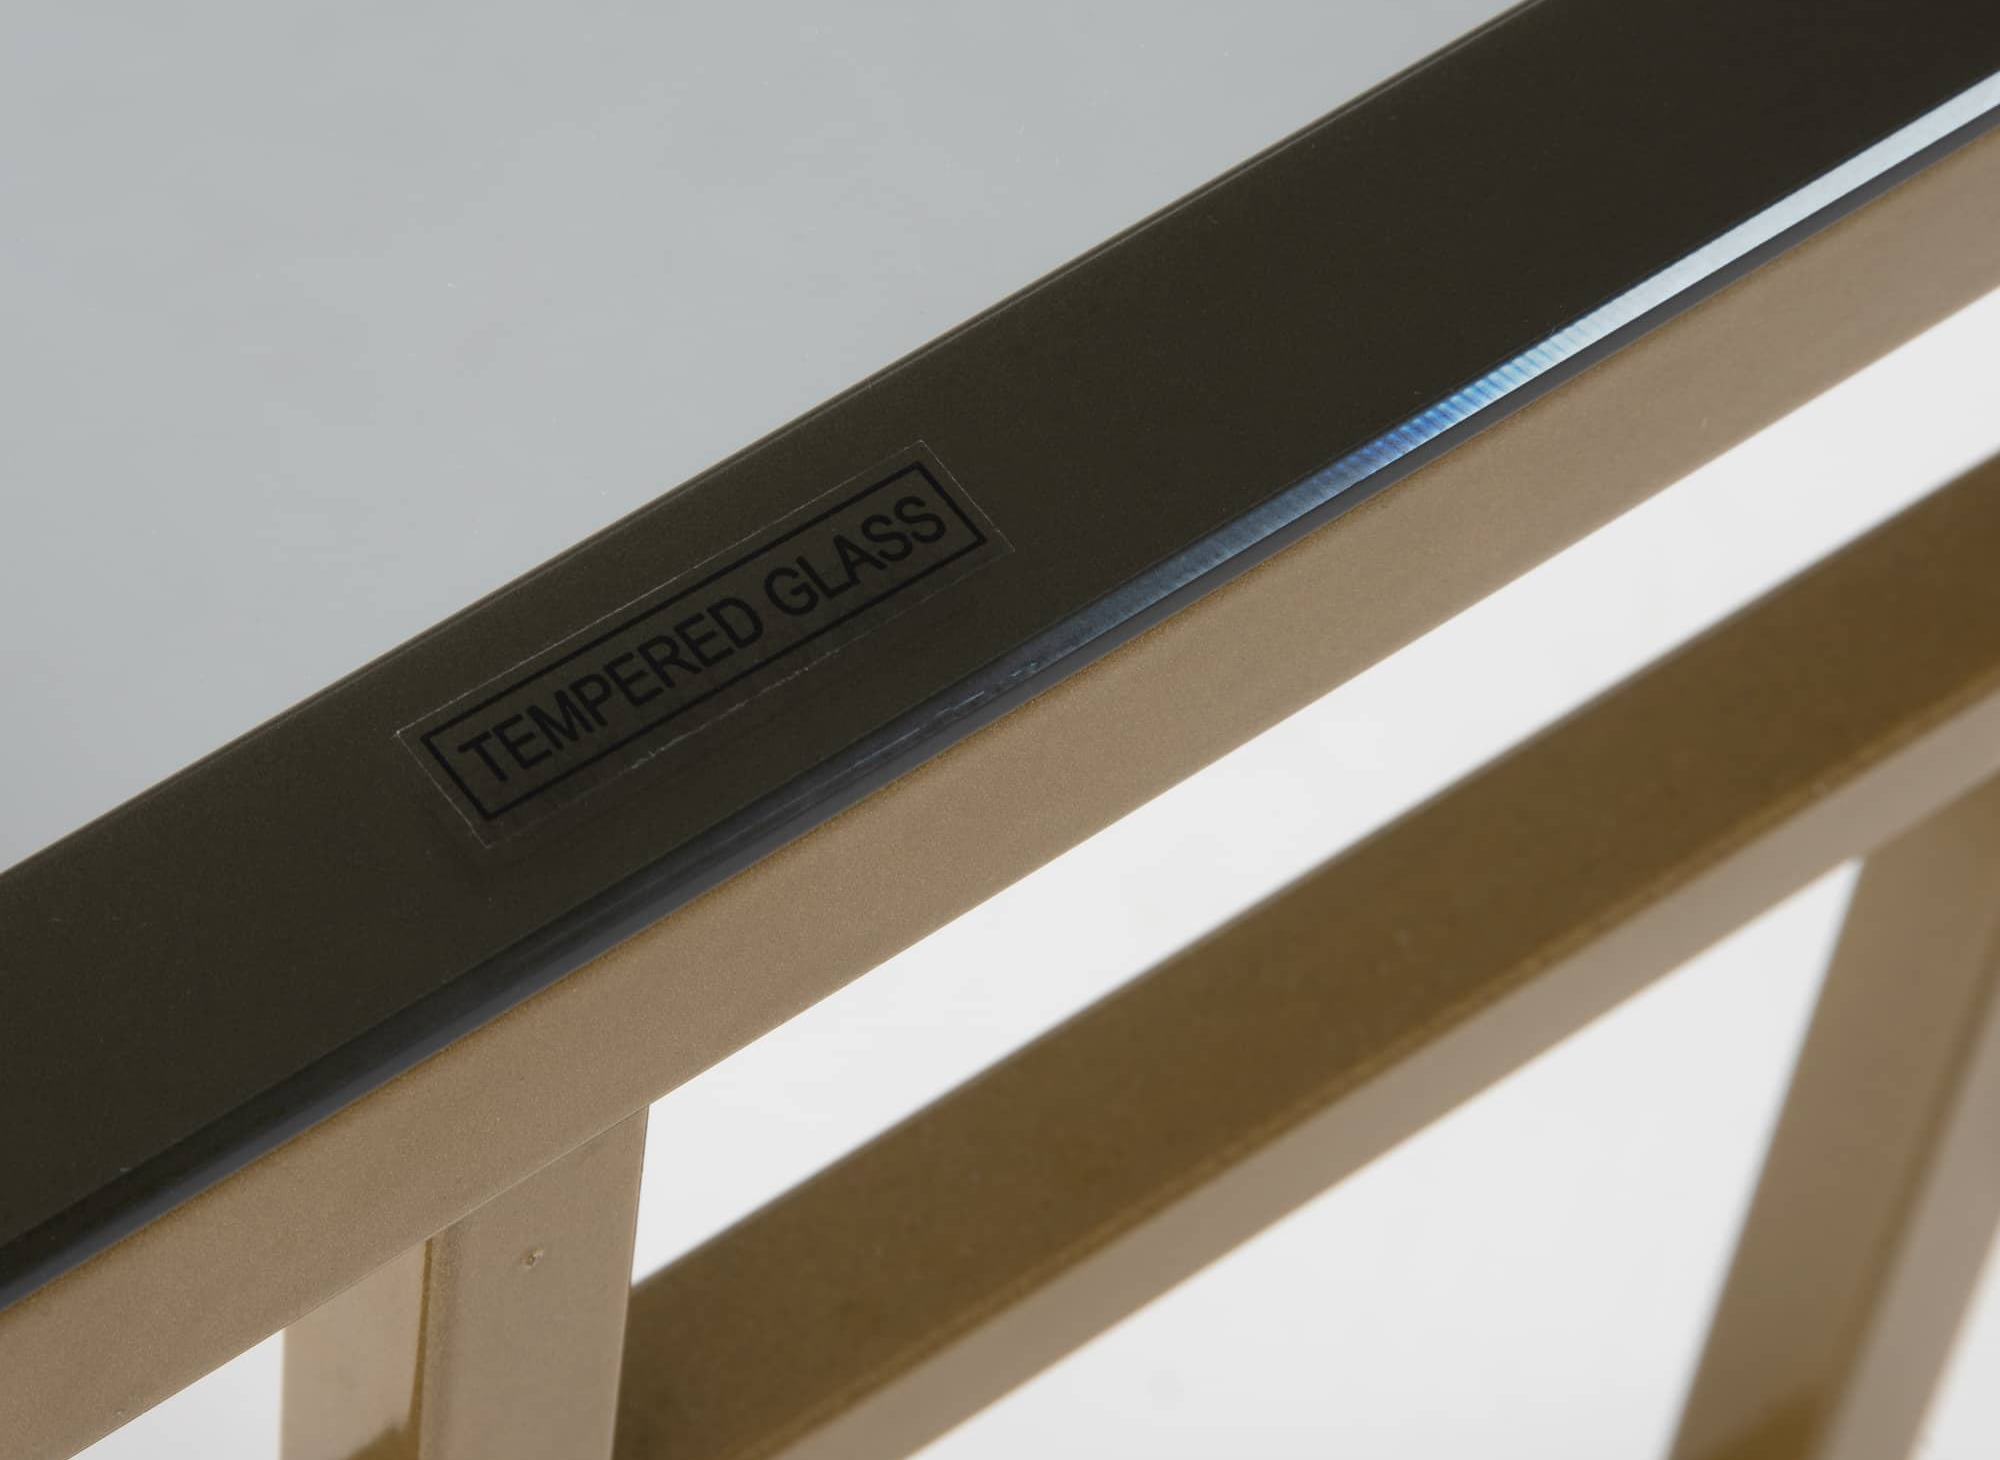 Table basse design en verre noir et métal doré rectangulaire PABLO